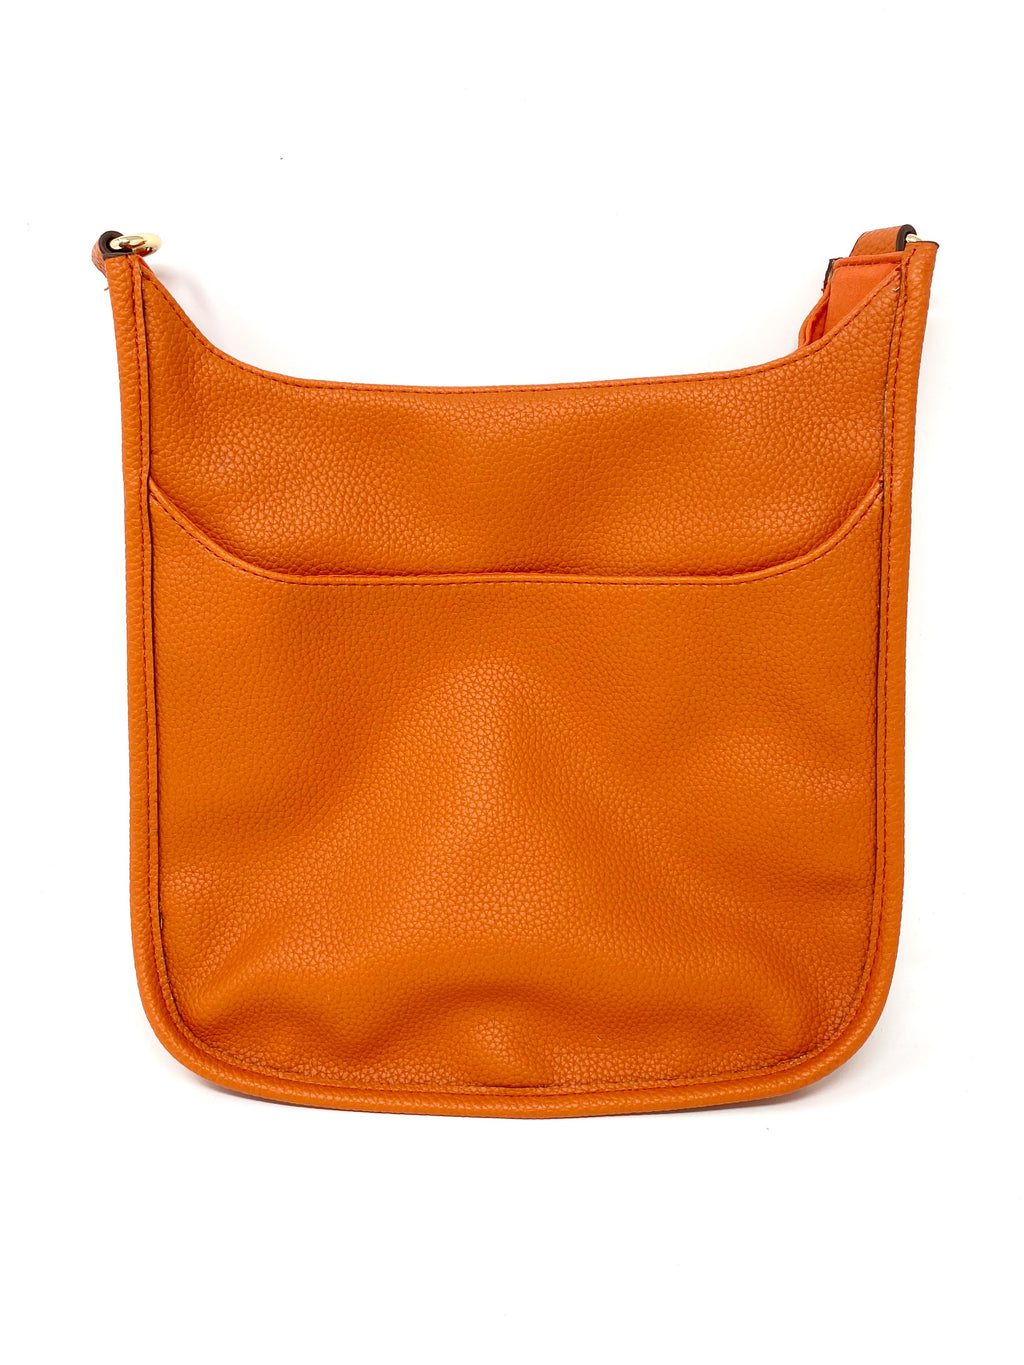 Saddle Bag in Vegan Leather in Orange